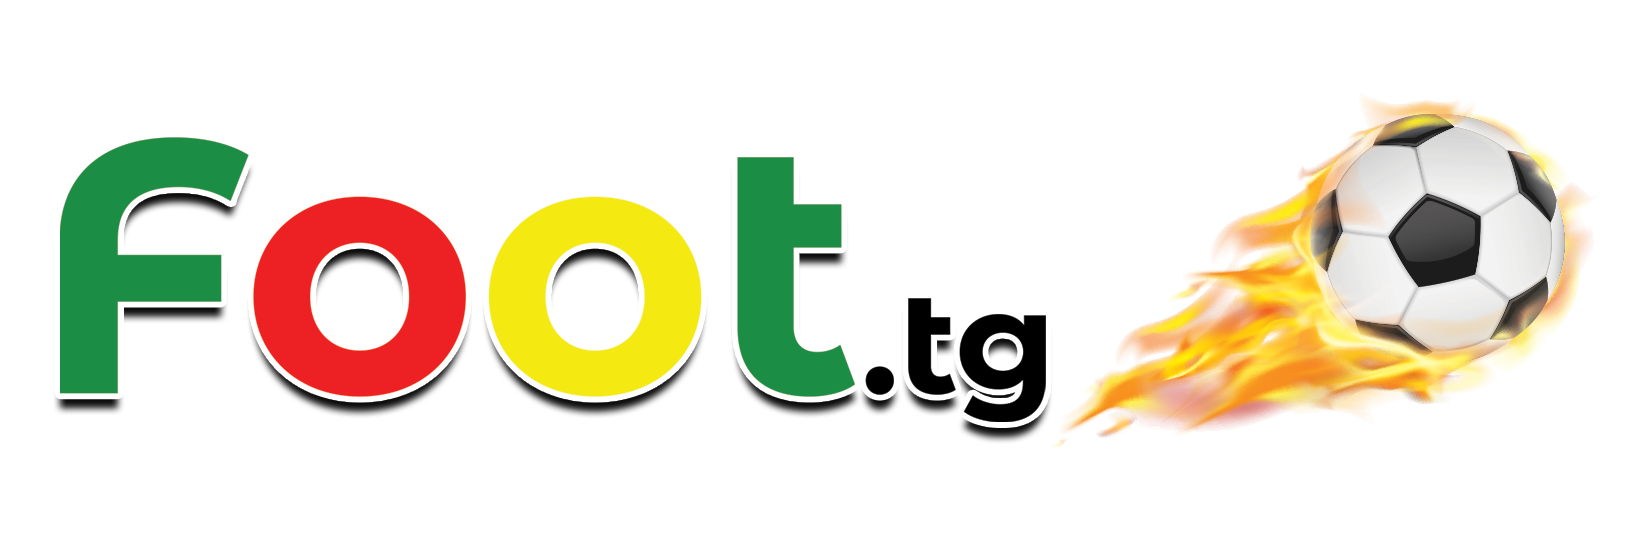 Le site de l'actu du foot togolais